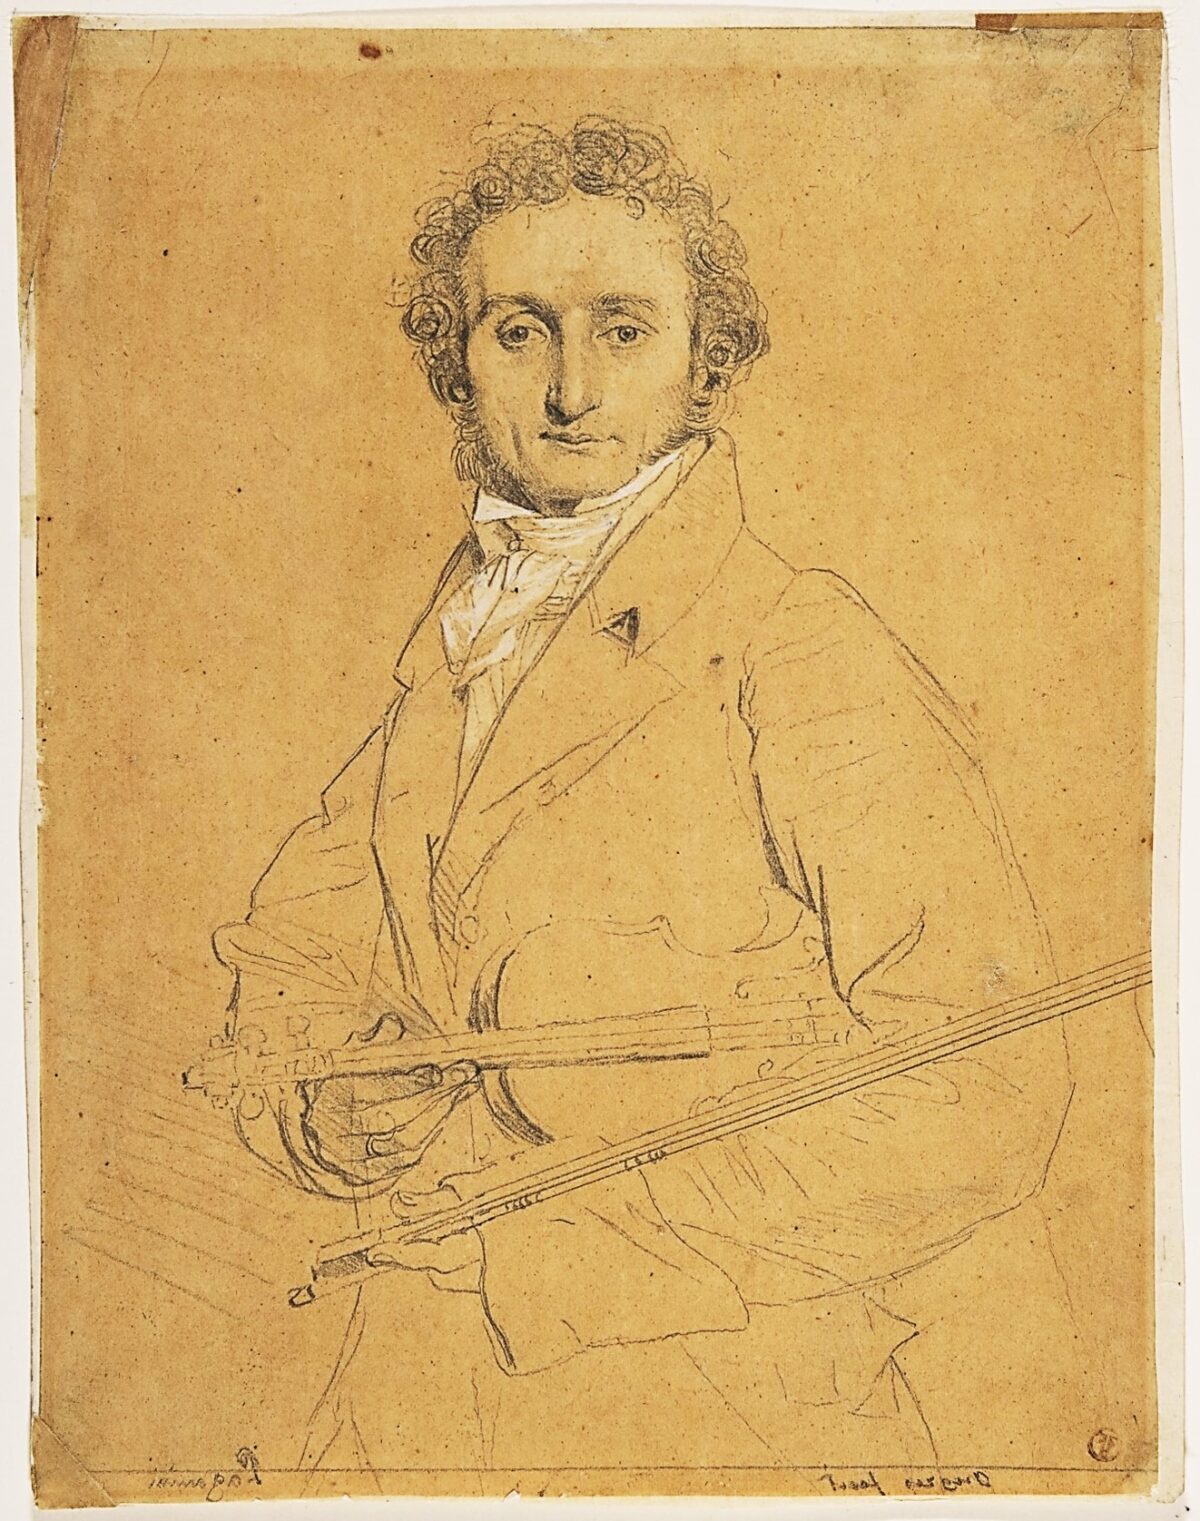 Một bức tranh chân dung của nghệ sĩ Niccolò Paganini, vào khoảng năm 1830, tranh của họa sĩ Jean Auguste Dominique Ingres. Viện bảo tàng Mỹ thuật Metropolitan. (Ảnh: Tài sản công)